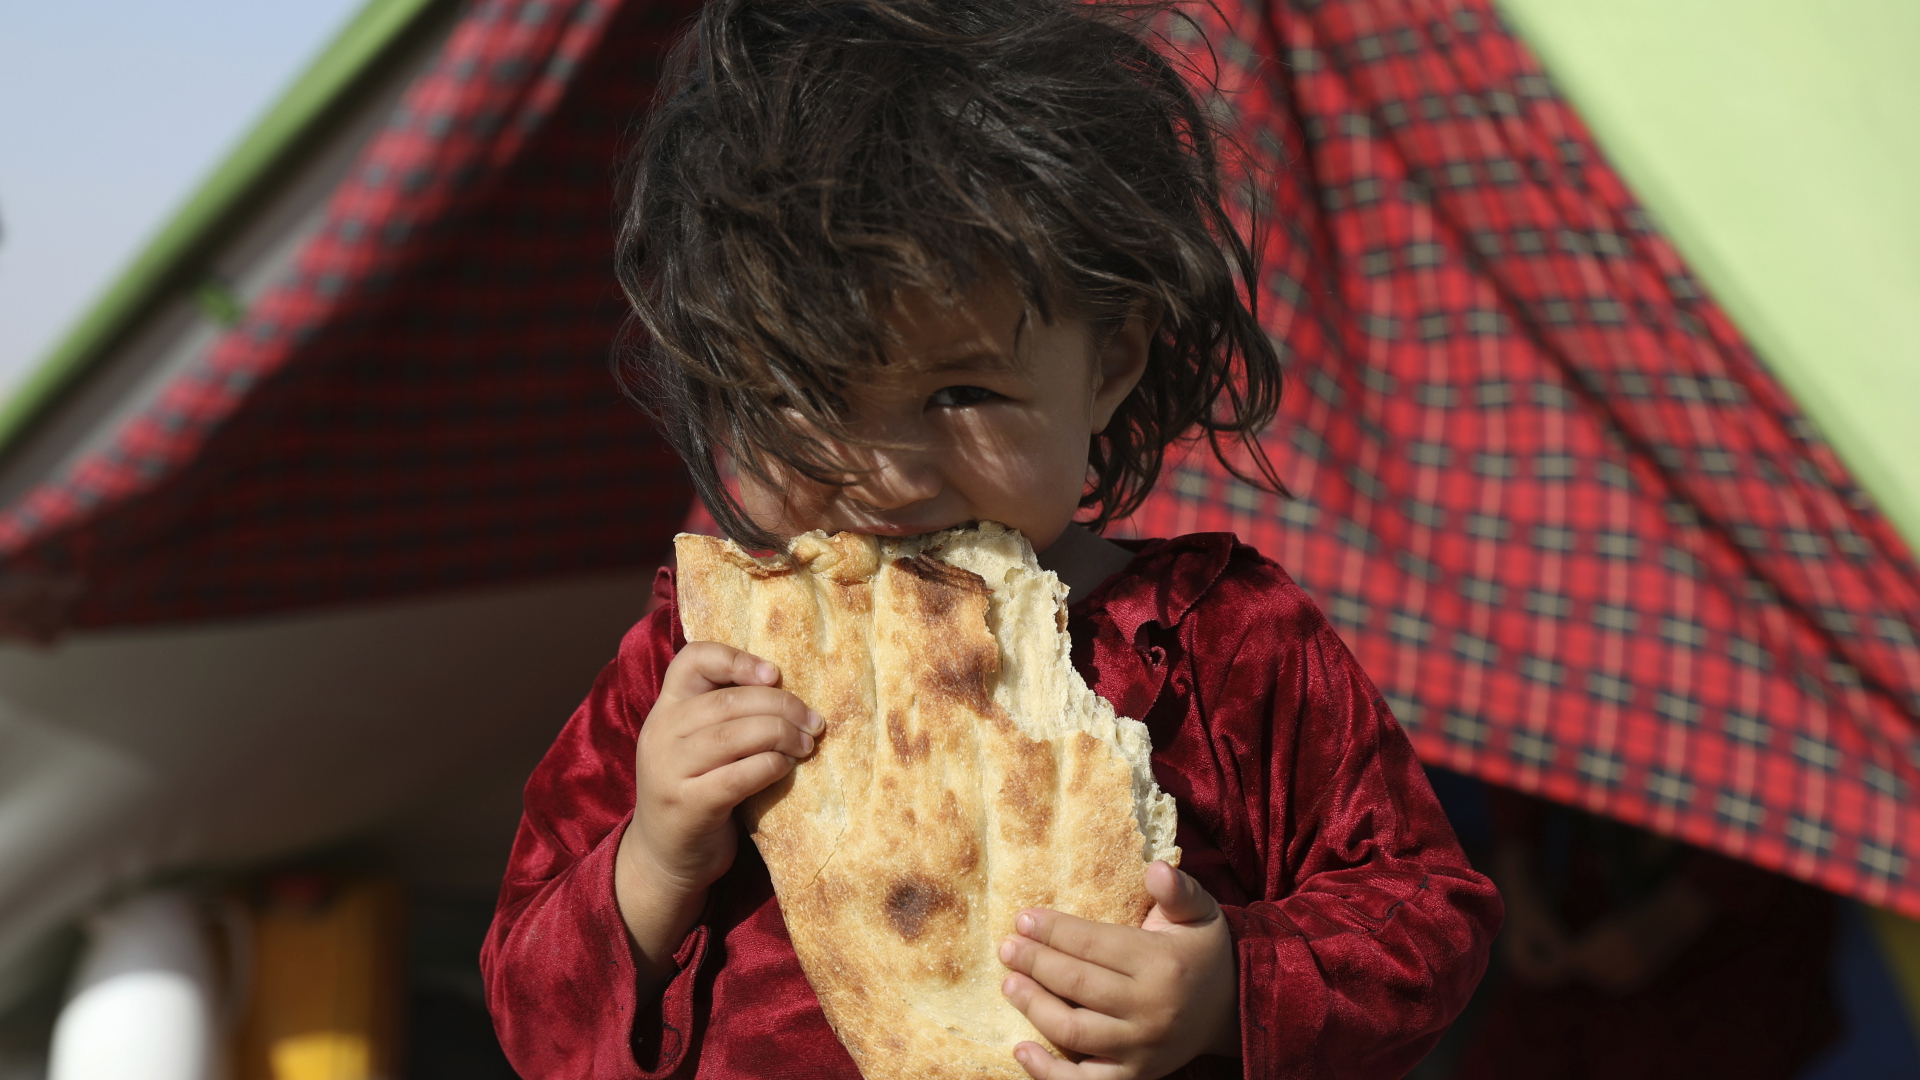 Ein afghanisches Mädchen, das aufgrund von von Kämpfen zwischen den Taliban und afghanischen Sicherheitskräften aus ihrer Heimat geflohen ist, steht vor einem Zelt und isst Brot. | dpa